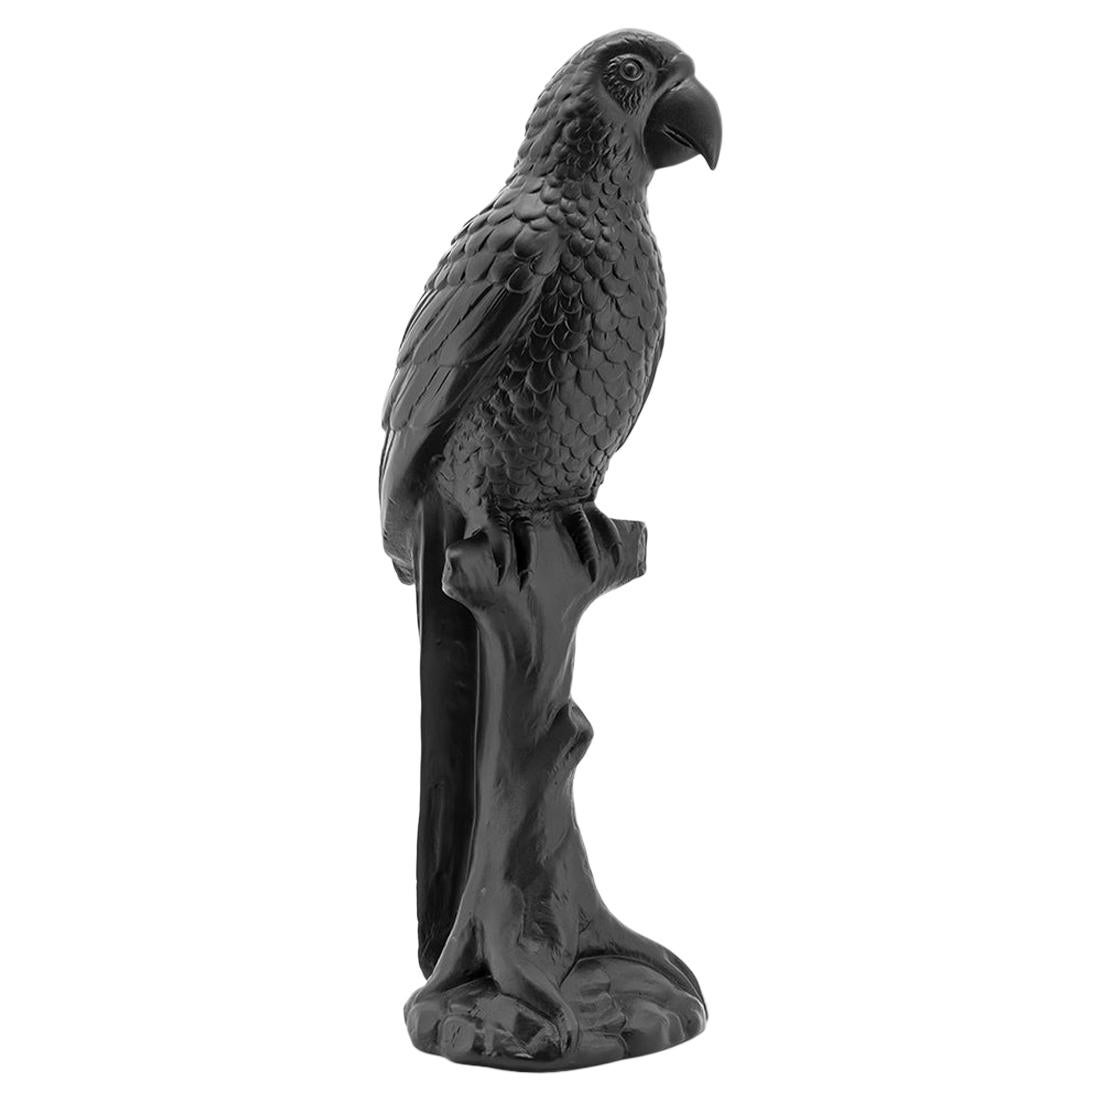 Black Parrot Sculpture